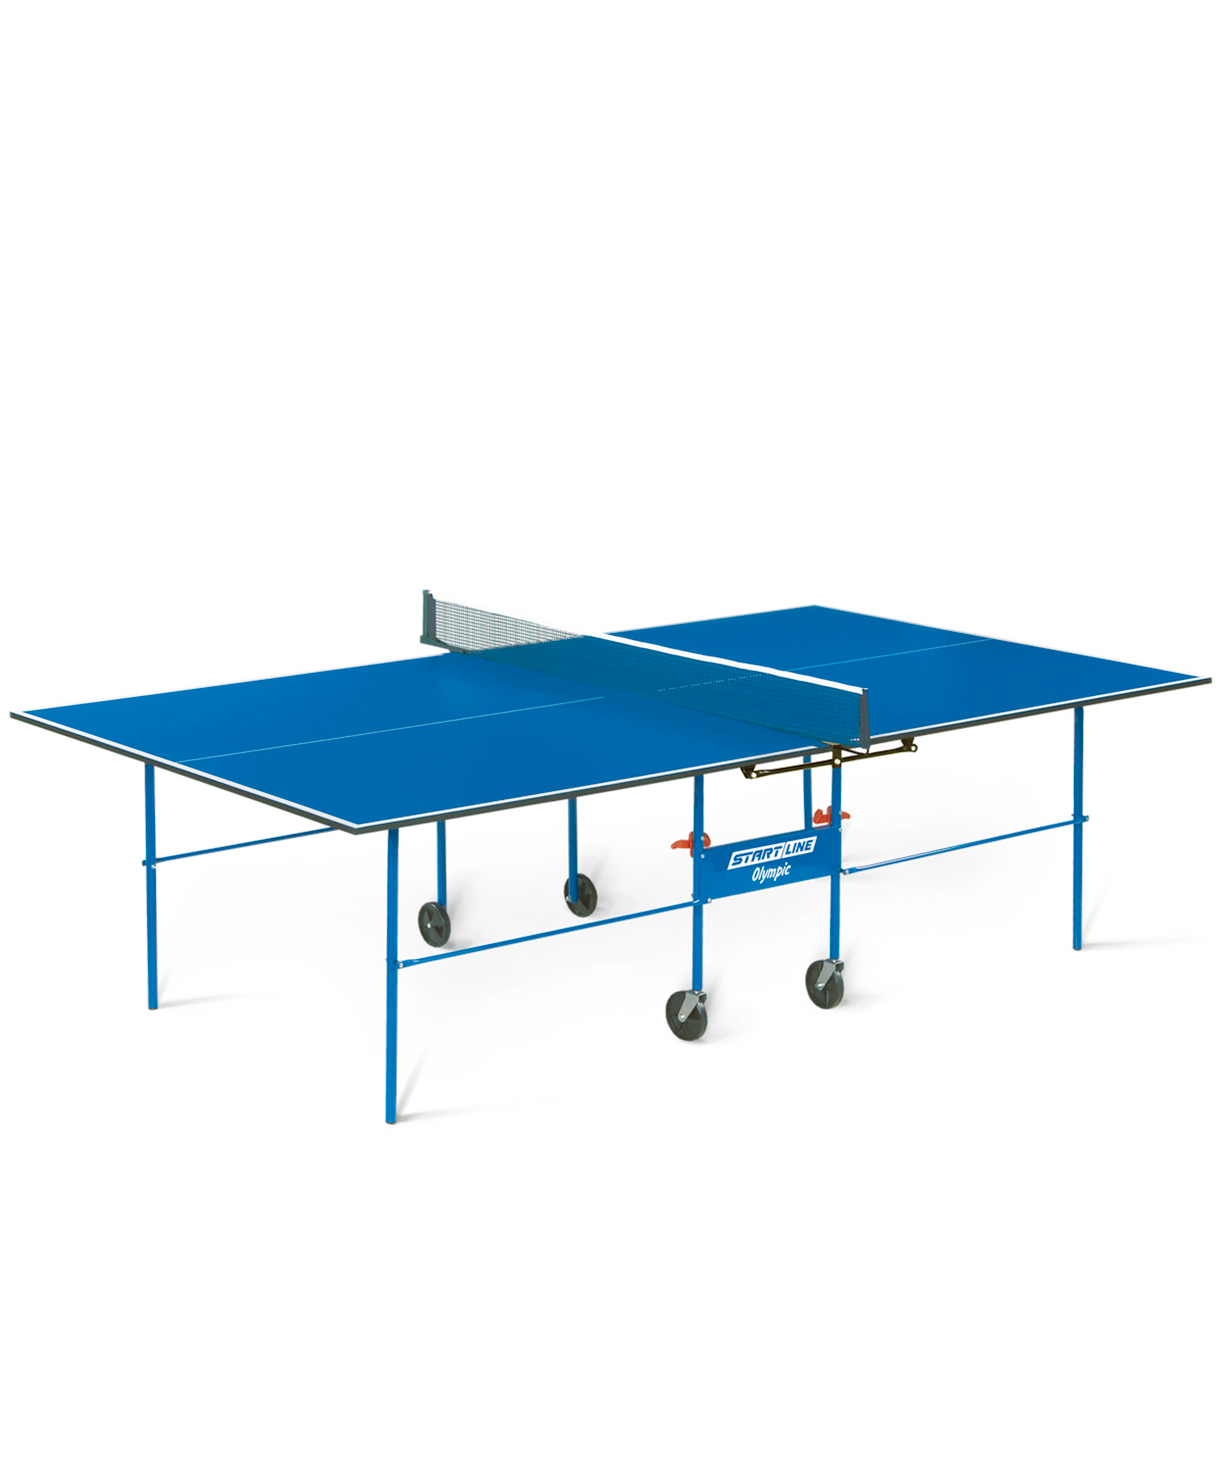 фото Теннисный стол start line olympic синий